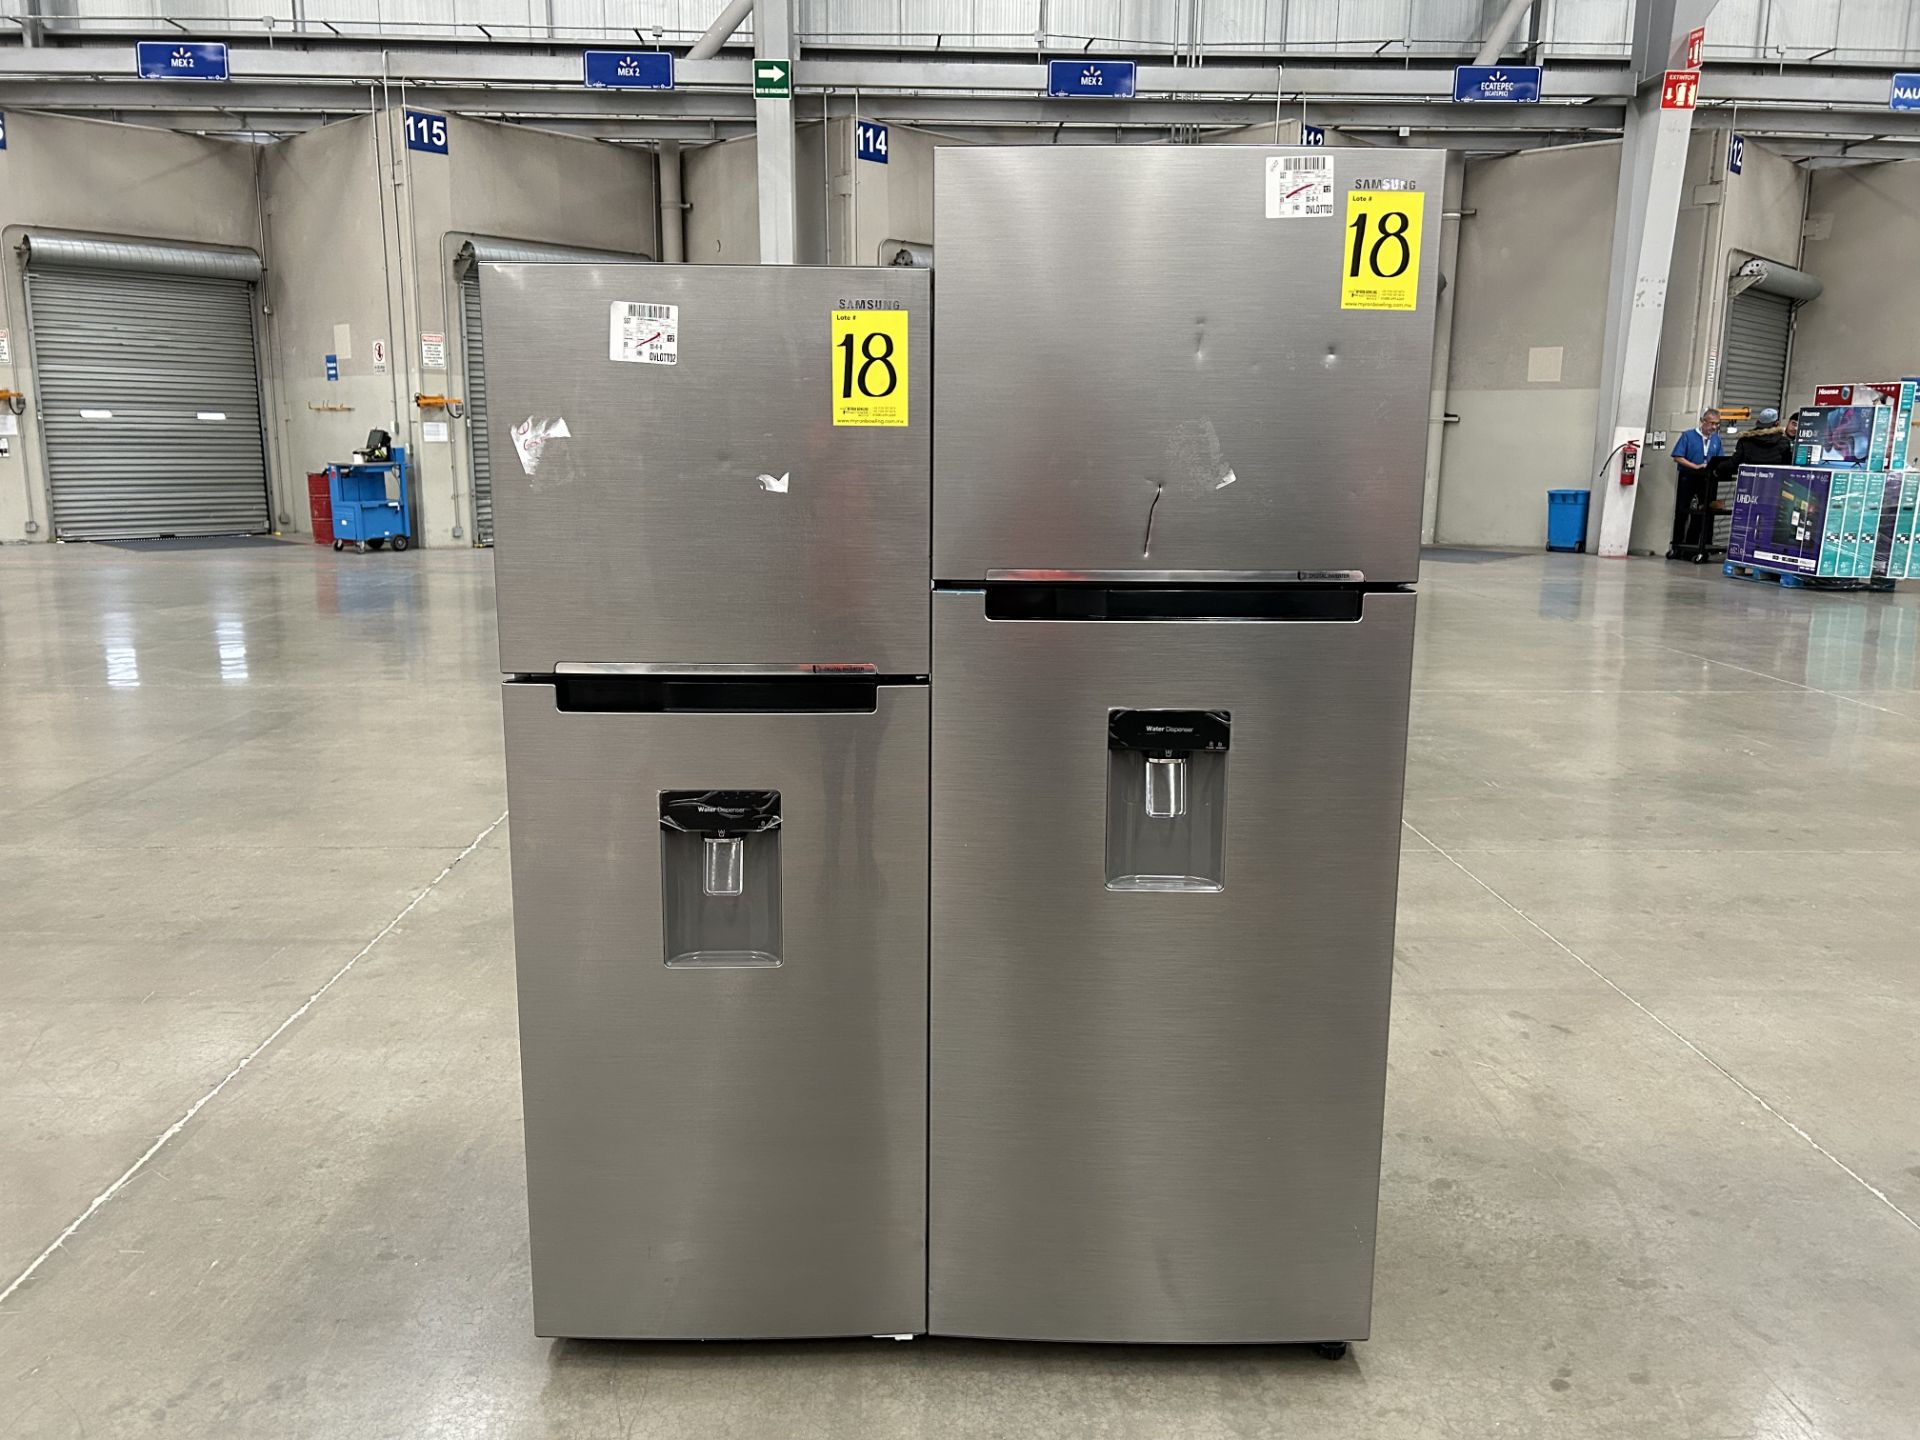 Lote de 2 refrigeradores contiene: 1 refrigerador con dispensador de agua Marca SAMSUNG, Modelo RT3